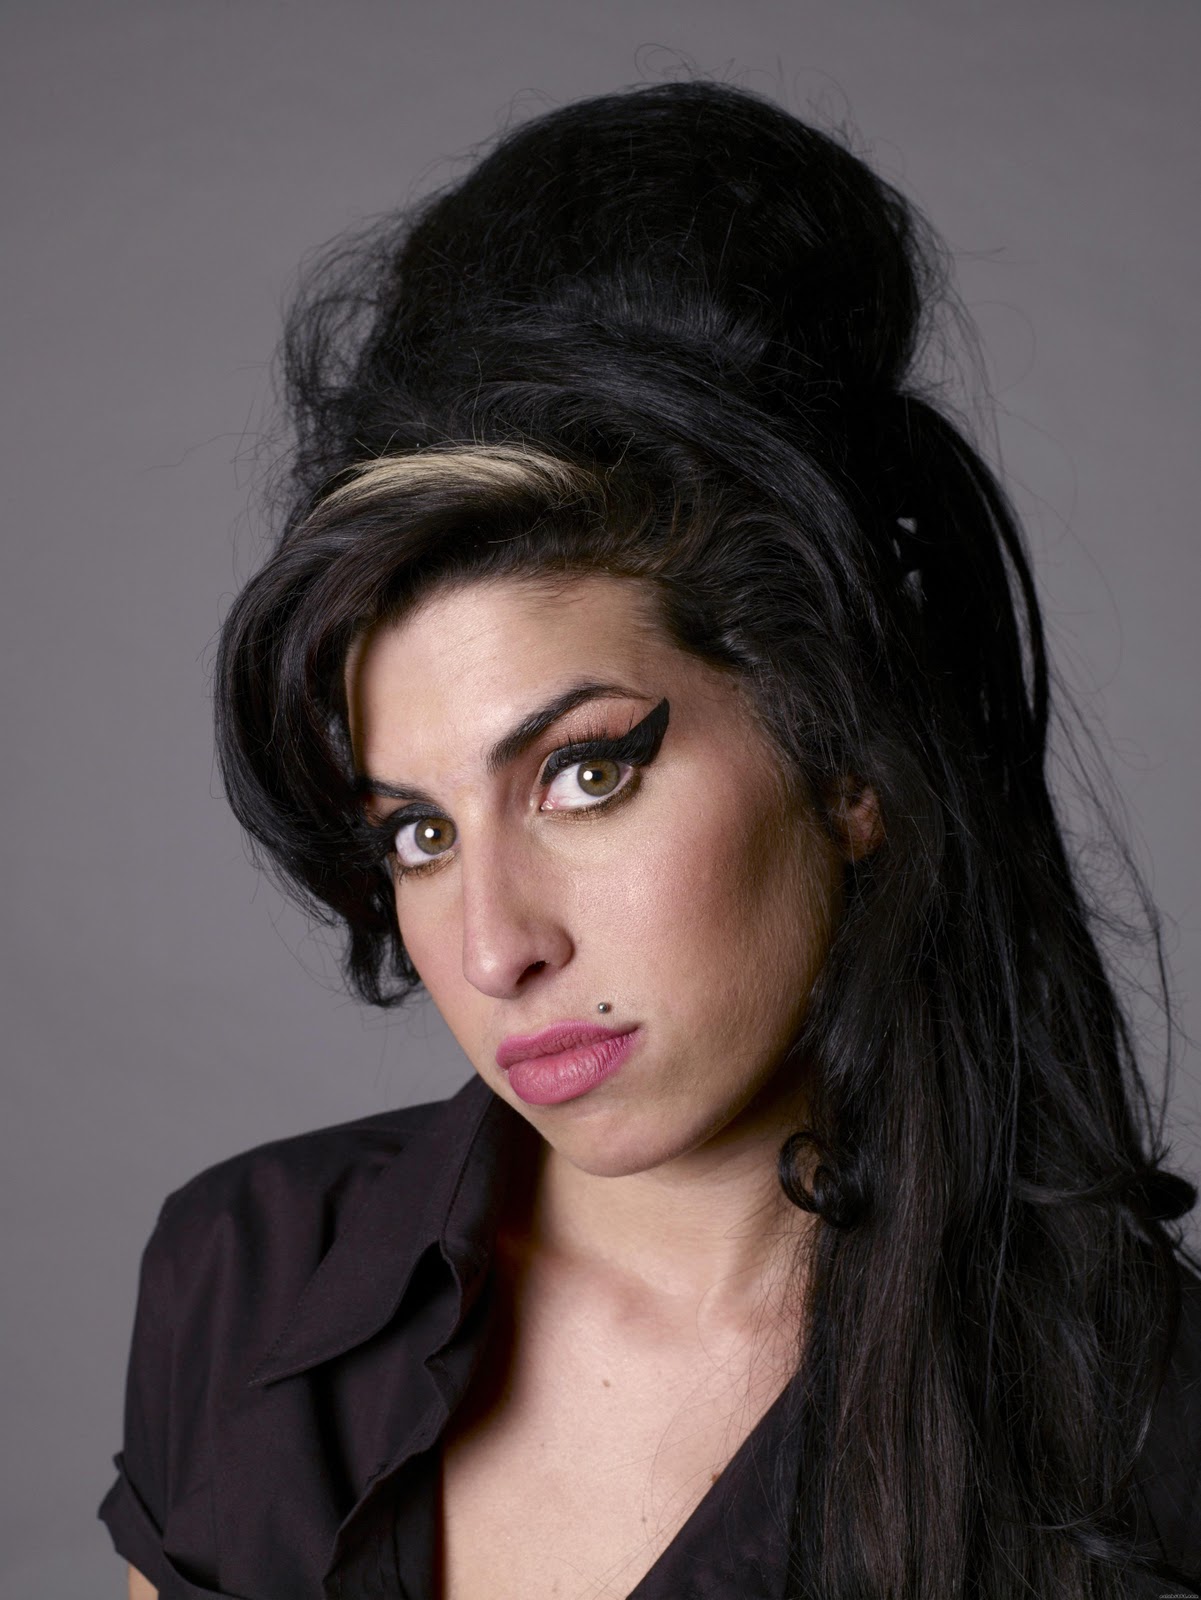 El ex compañero de banda de Amy Winehouse, Dale Davis, no cree que haya “suficiente material” ni de lejos para el lanzamiento de otro disco